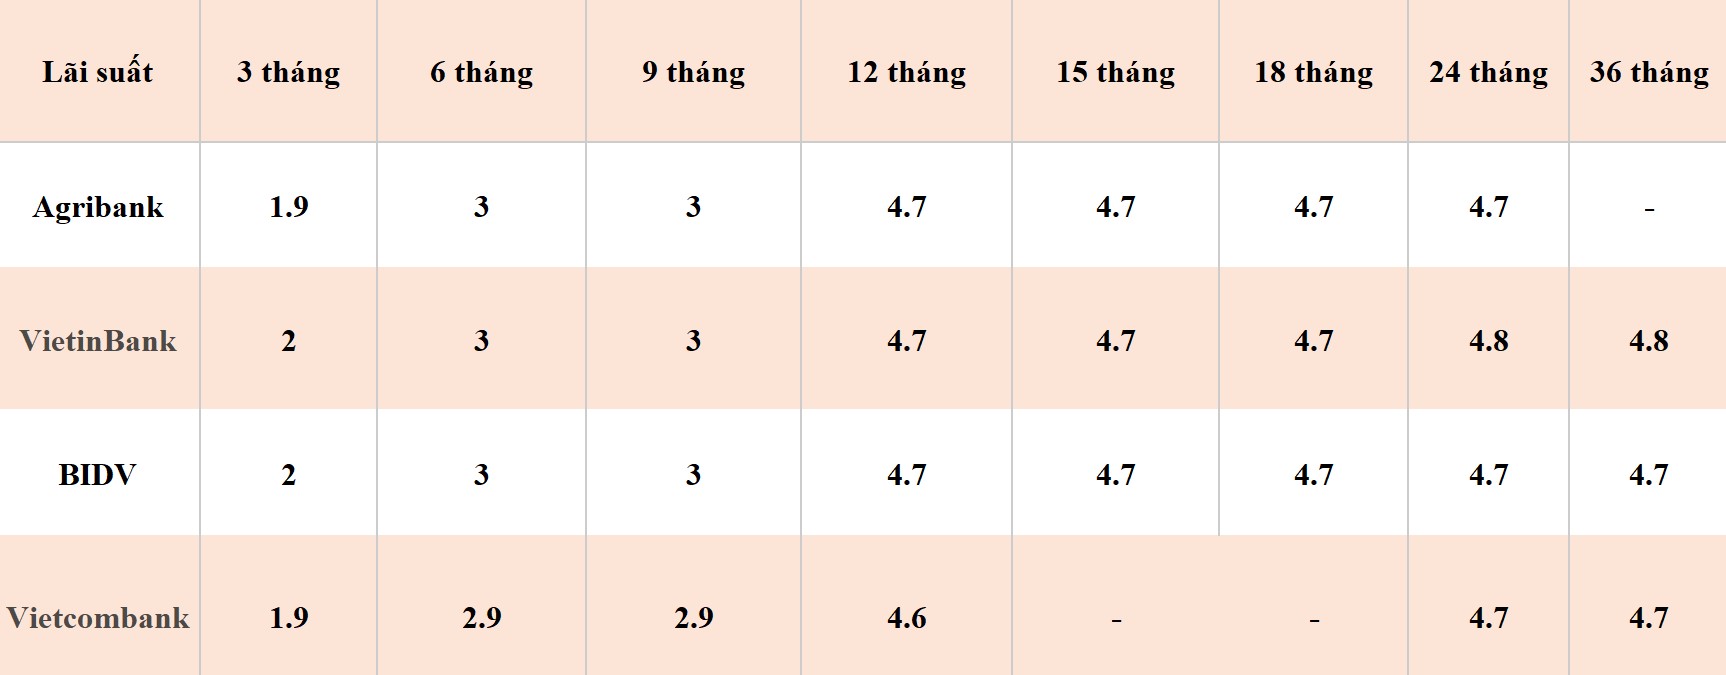 Bảng so sánh lãi suất các kỳ hạn tại Vietcombank, Agribank, VietinBank và BIDV. Số liệu ghi nhận ngày 8.4.2024. Đơn vị tính: %/năm. Bảng: Khương Duy